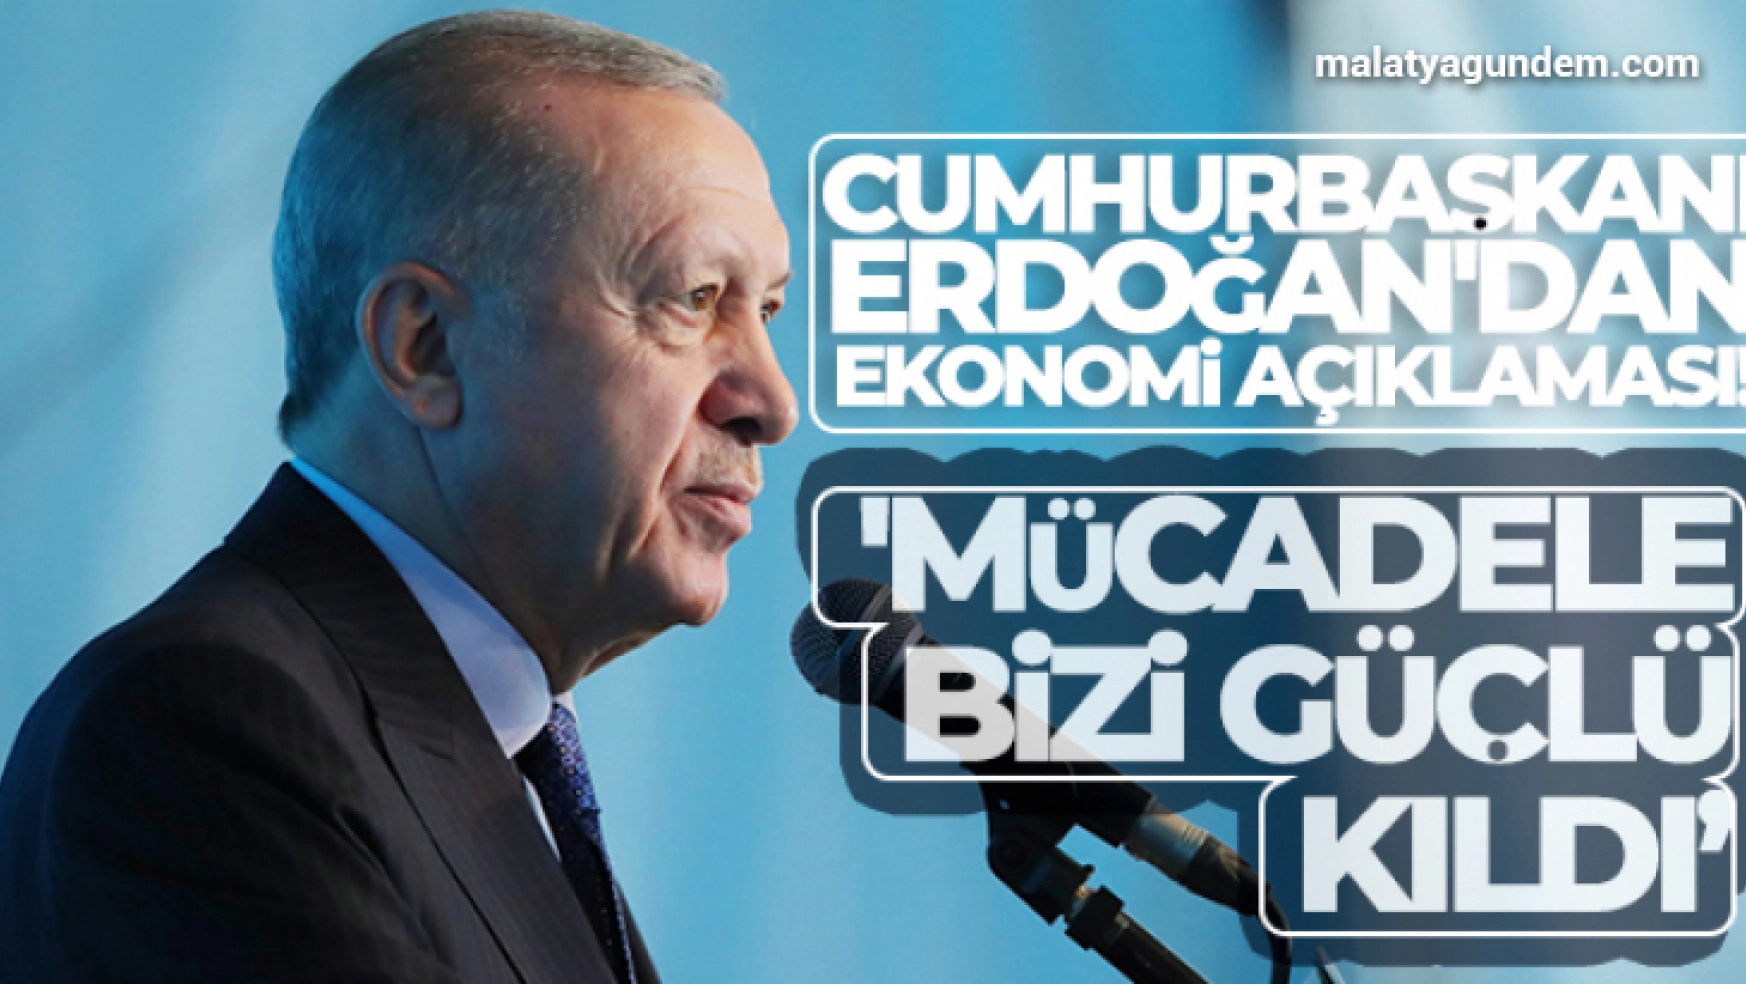 Cumhurbaşkanı Erdoğan'dan ekonomi açıklaması! 'Mücadele bizi güçlü kıldı'